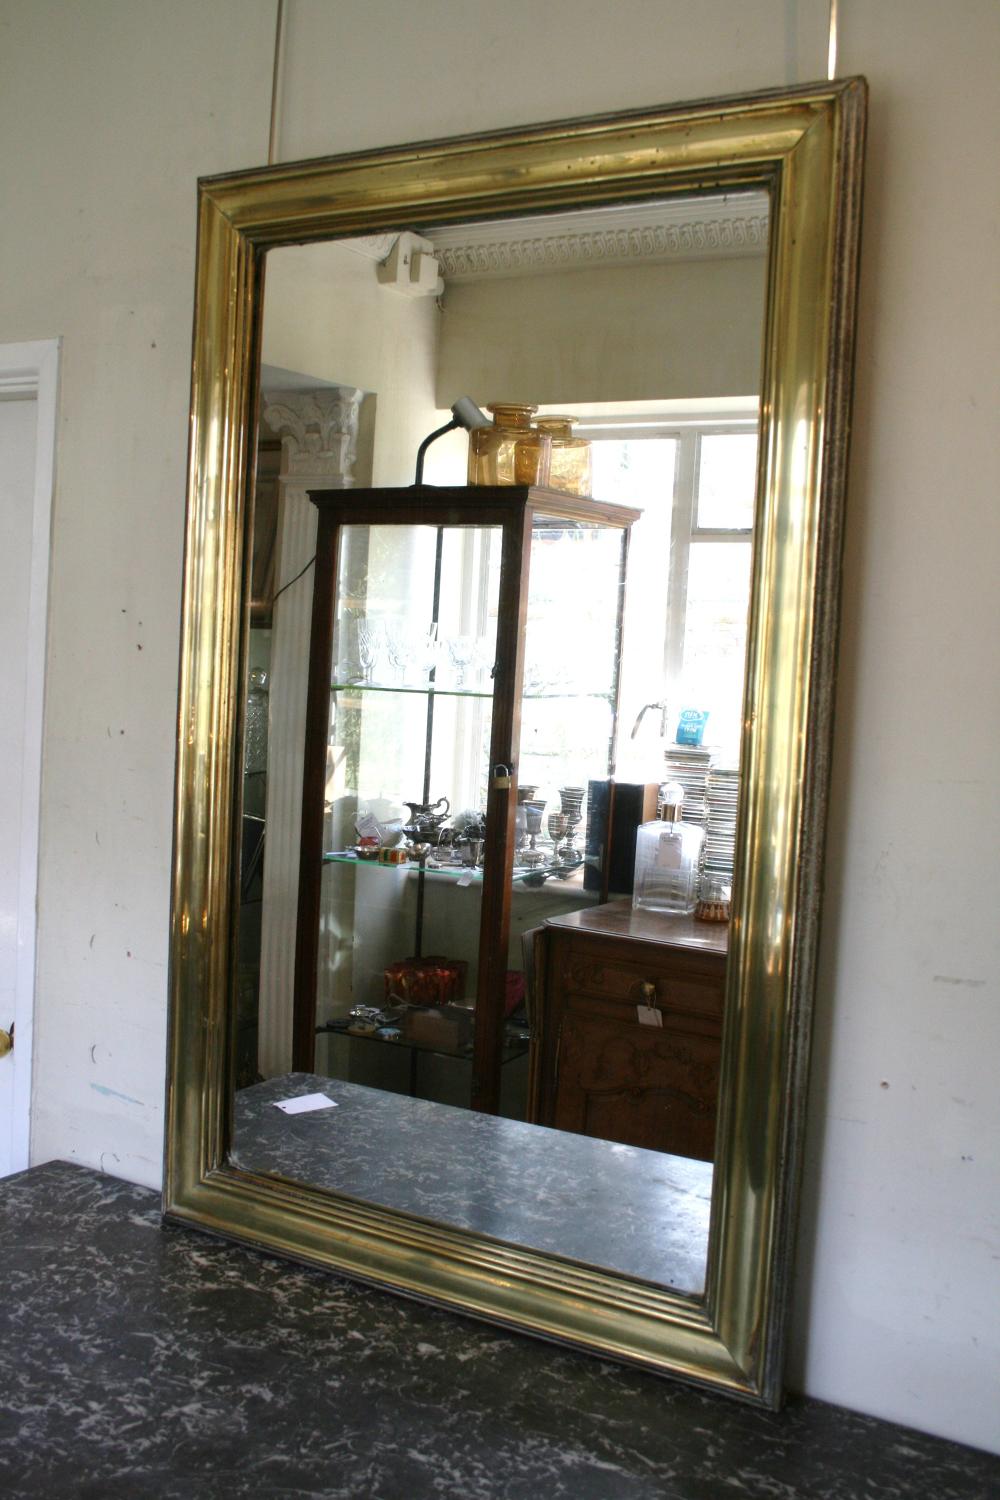 French Brass Bistro Mirror